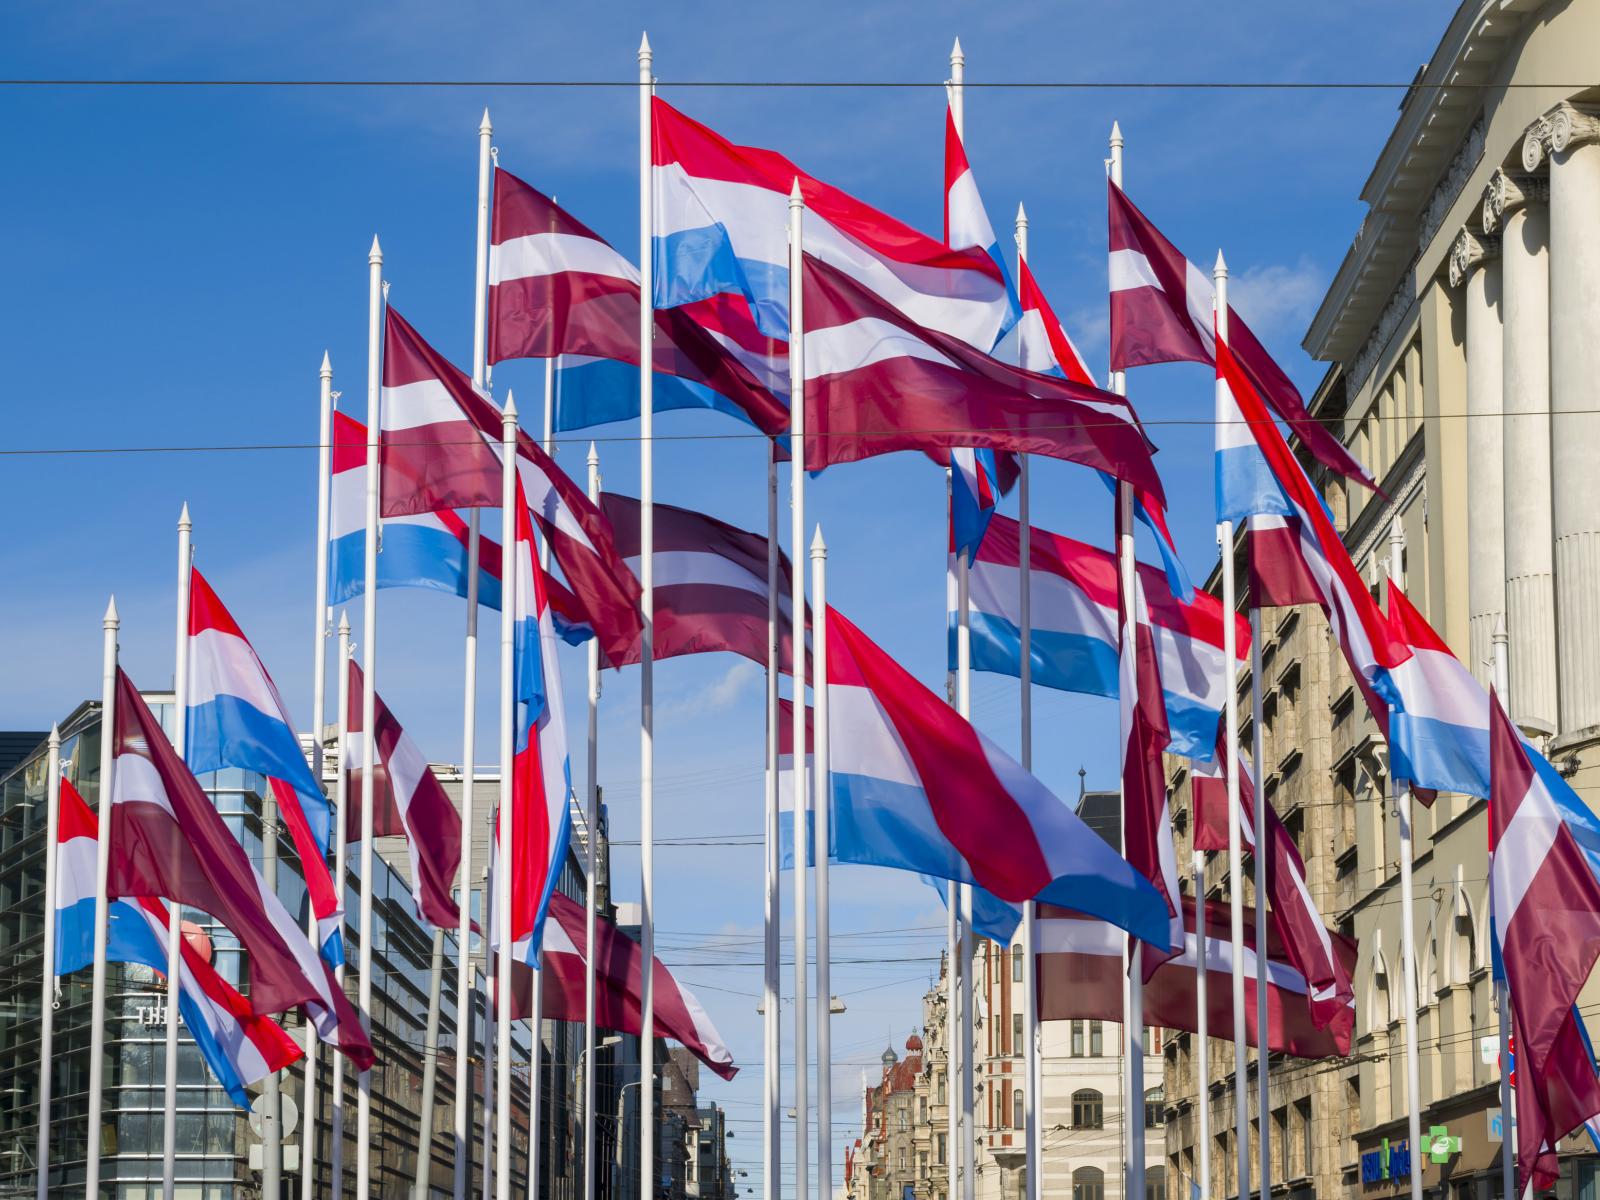 Des drapeaux letton et luxembourgeois flottent